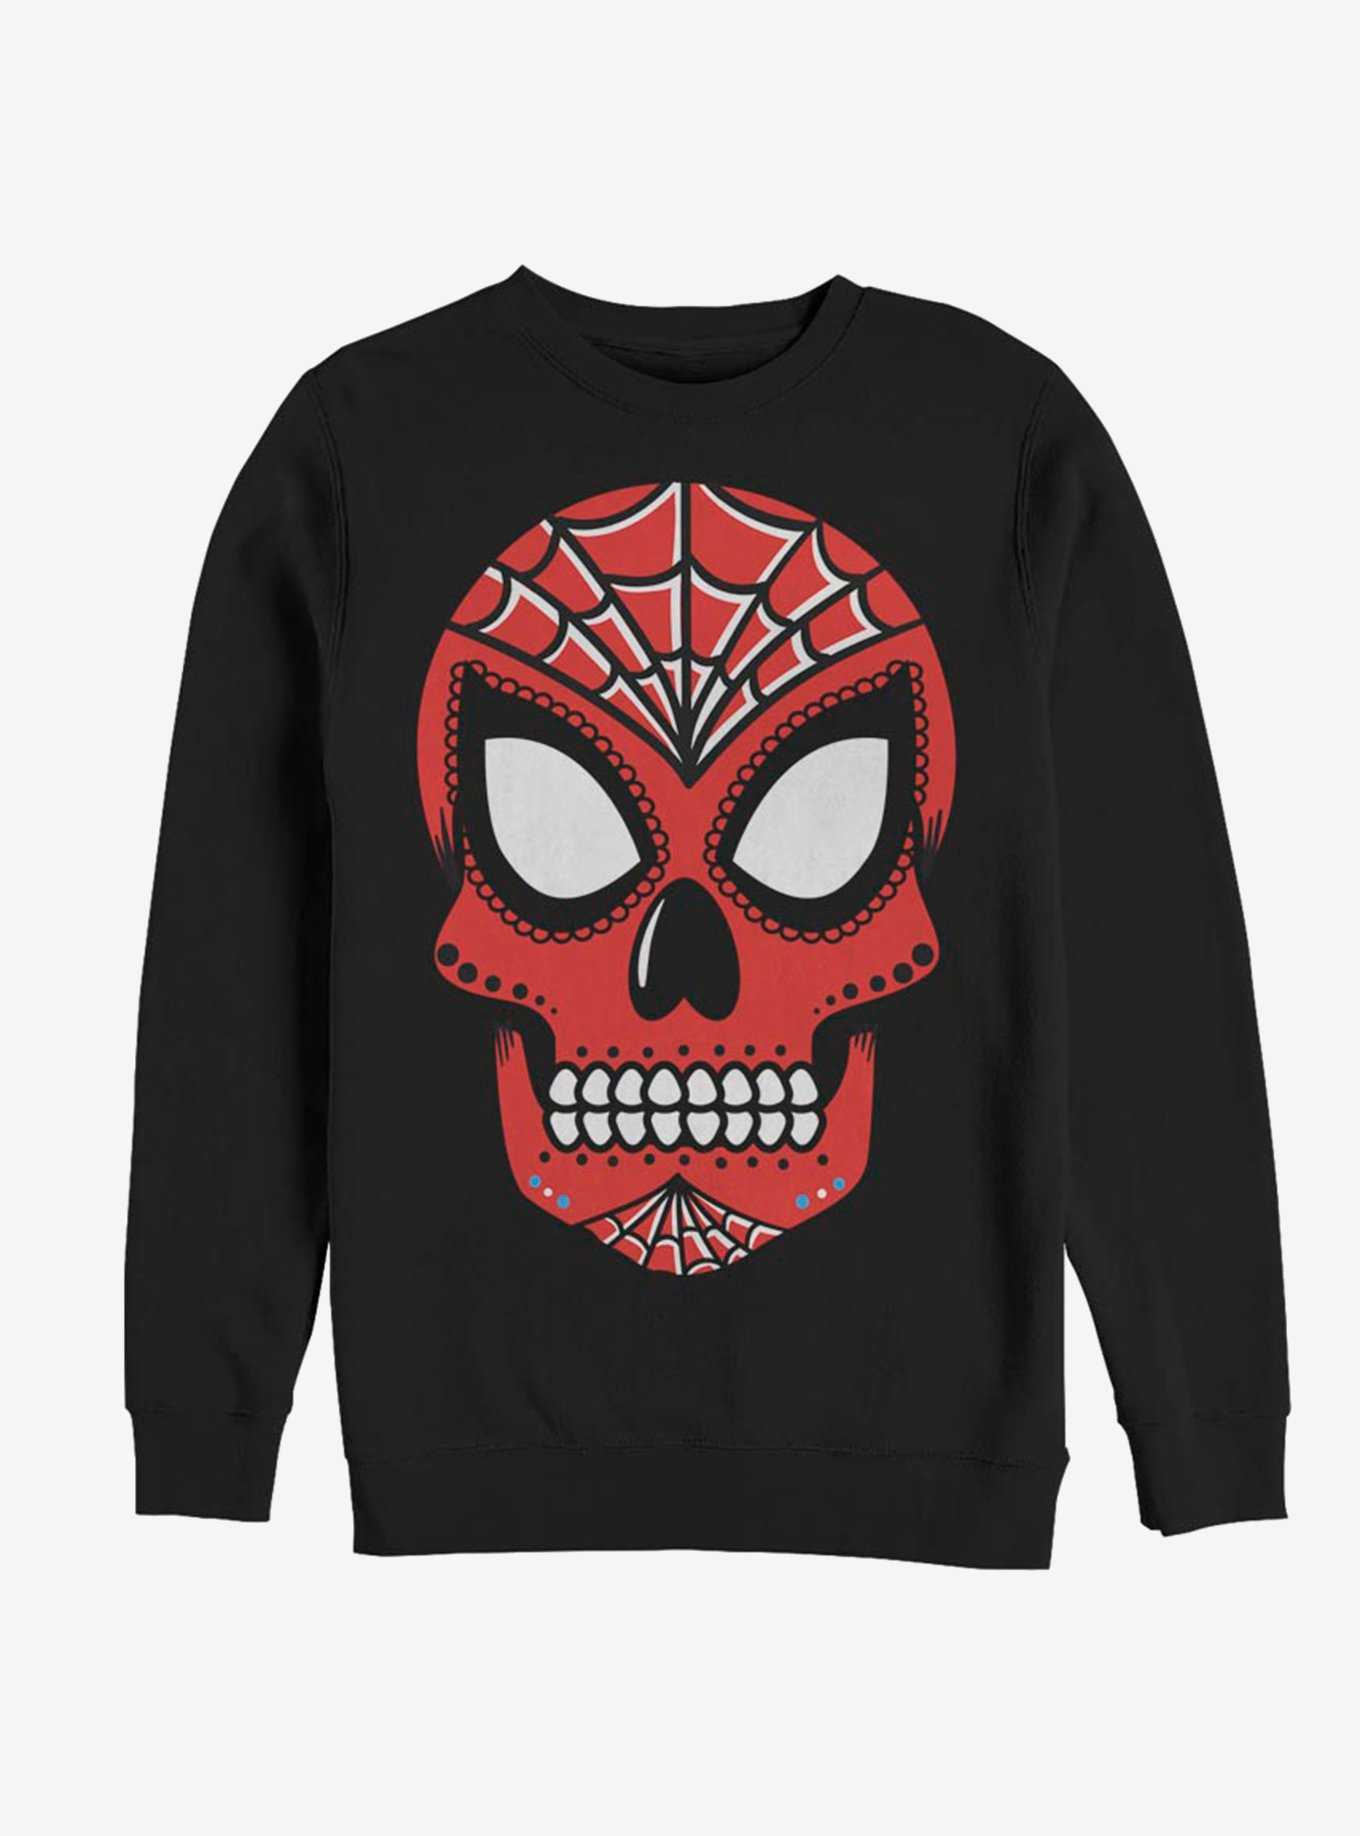 Marvel Spider-Man Sugar Skull Sweatshirt, , hi-res